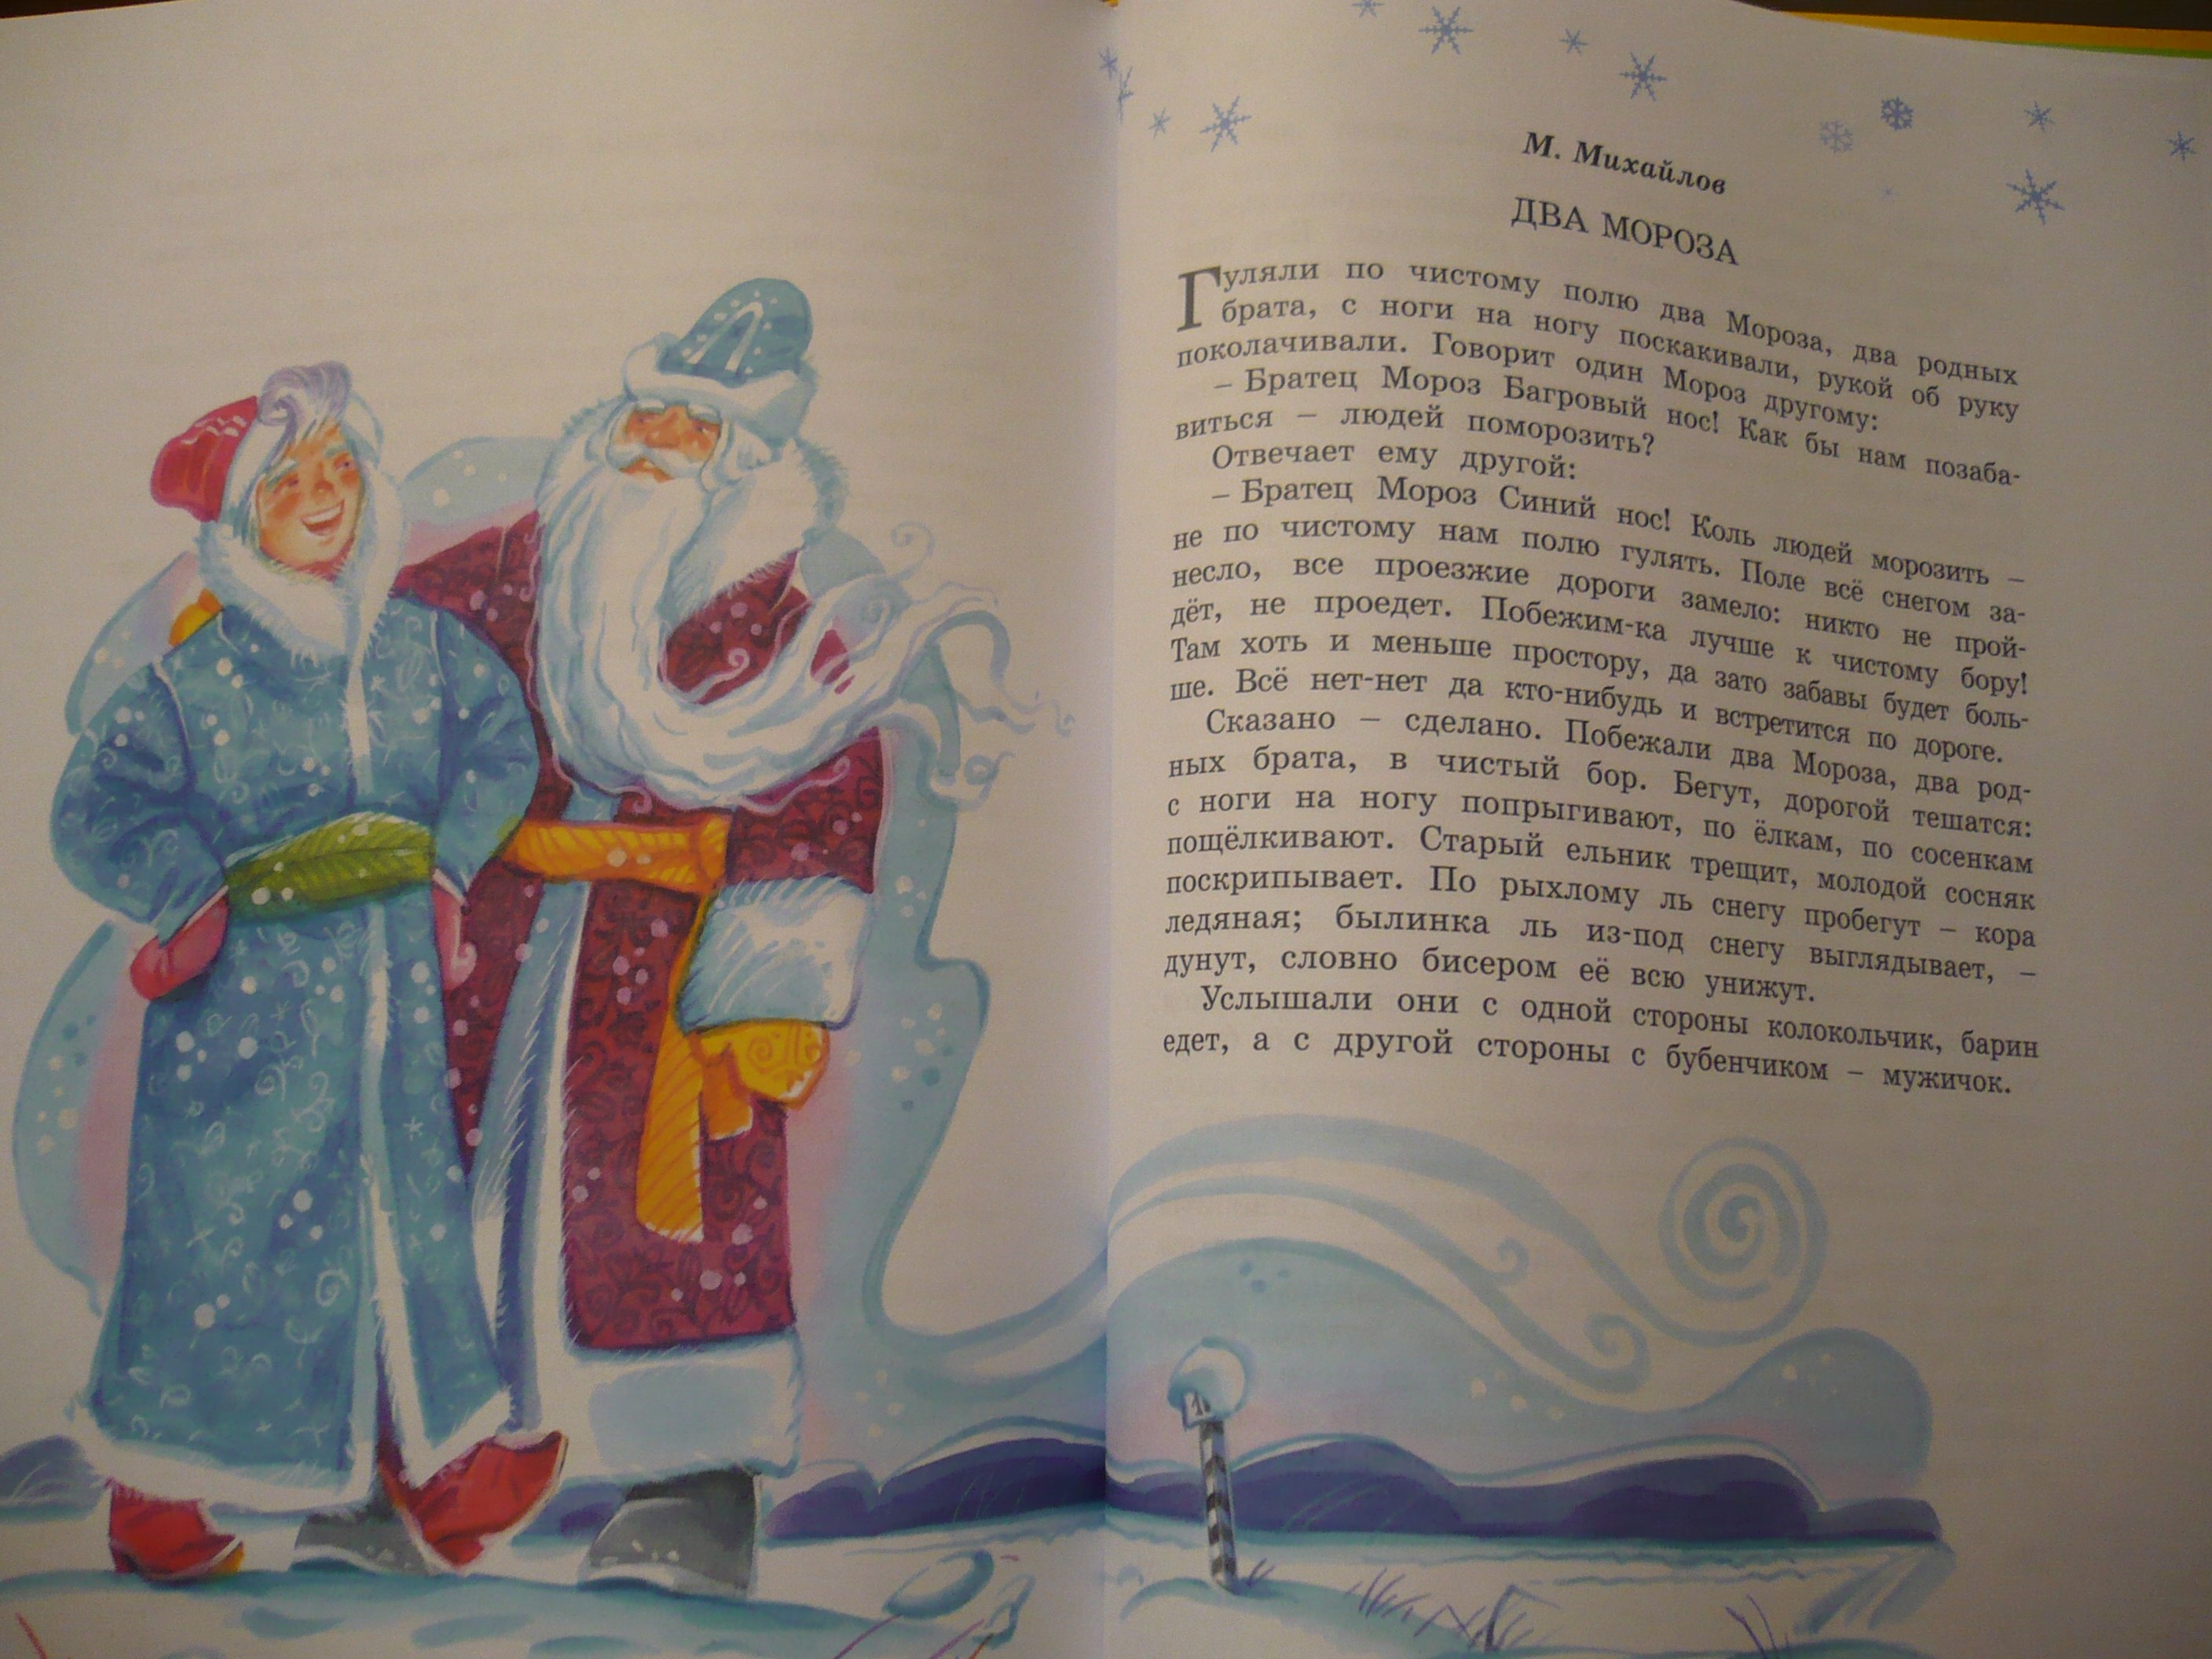 Сказка 2 мороза читать. Сказка про двух Морозов. Сказка два Мороза читать. Хрестоматия новый год. Сказка два Мороза текст.